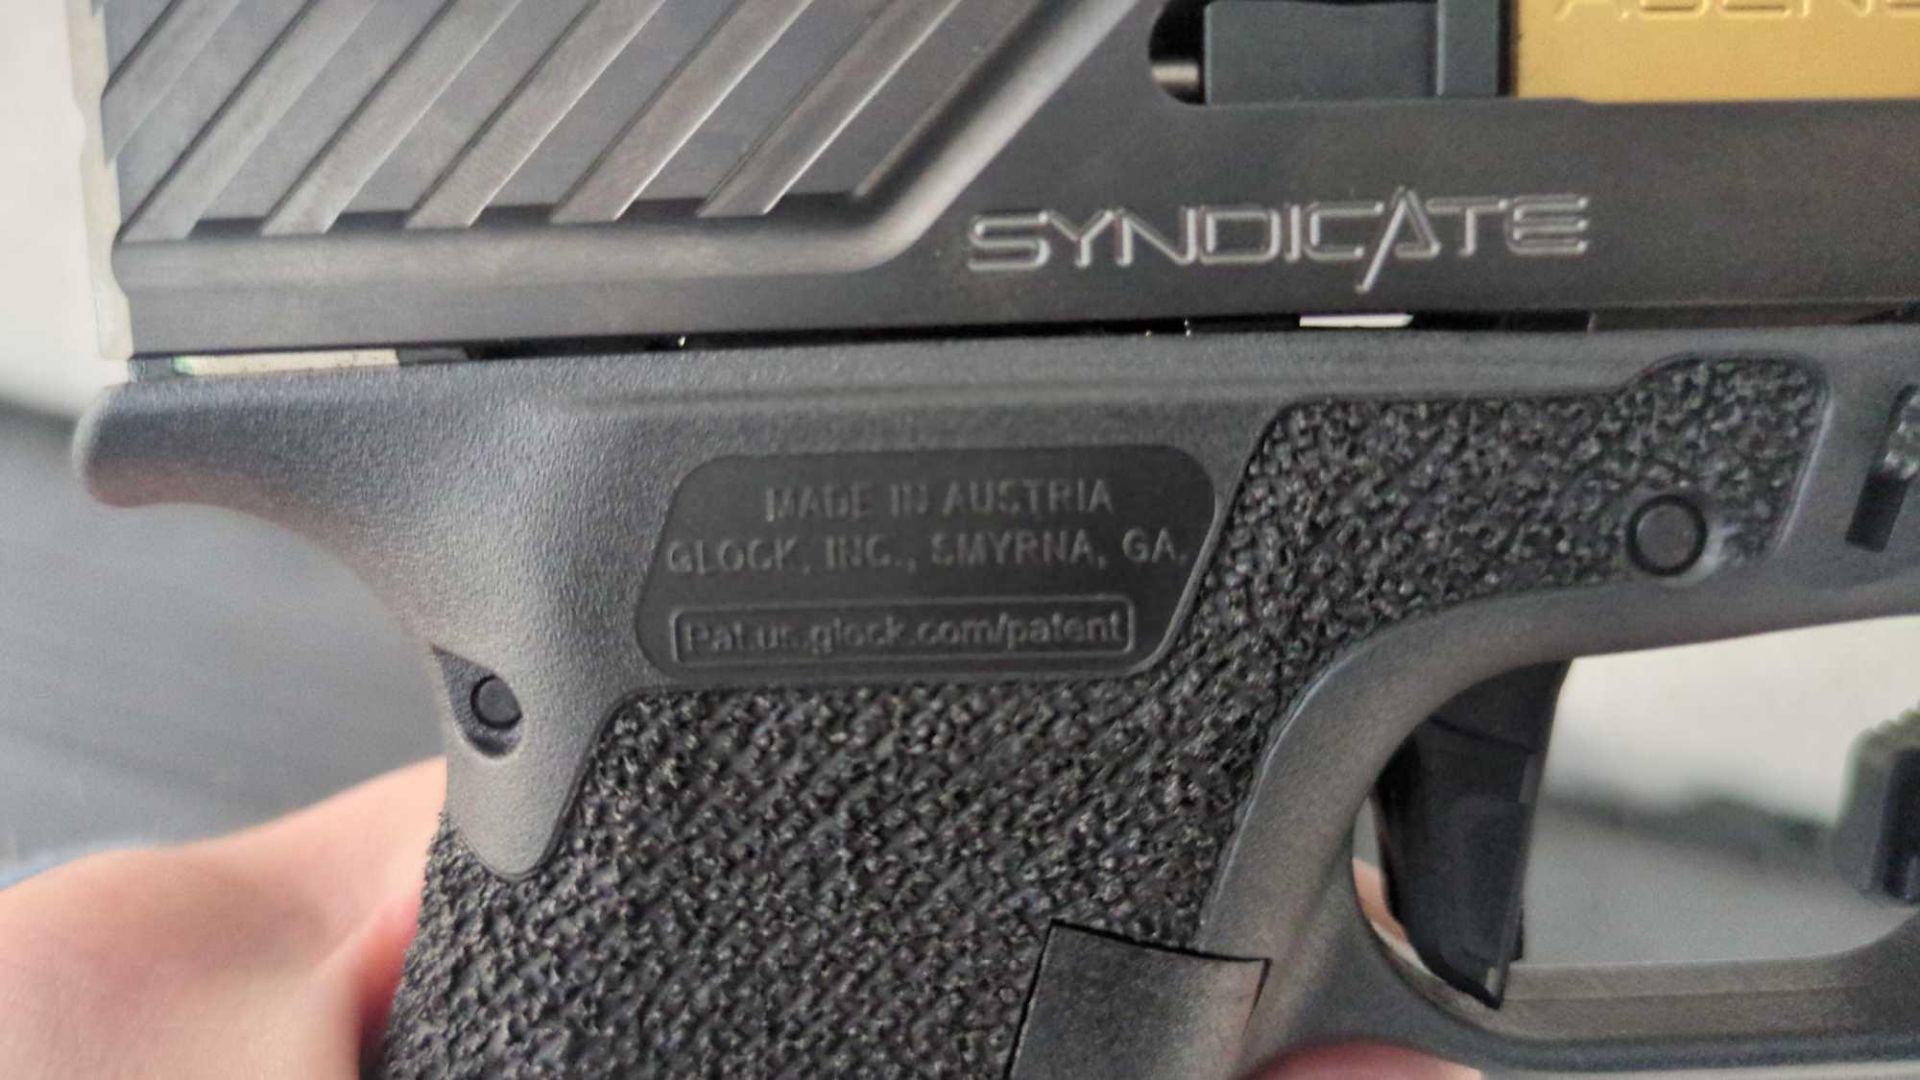 Syndicate glock handgun - Image 4 of 5